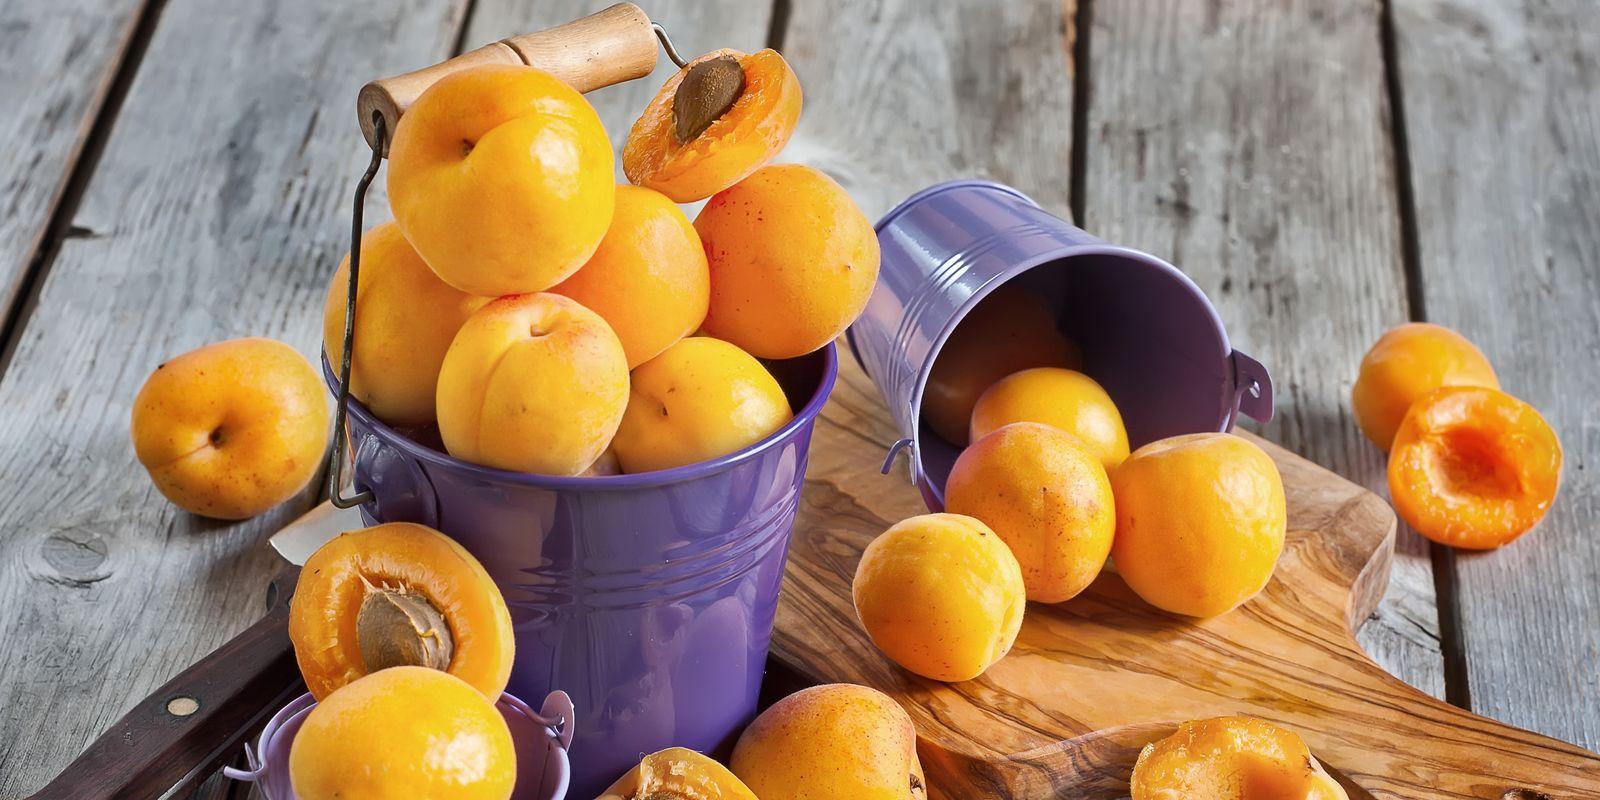 Meruňky - oranžový antioxidační poklad